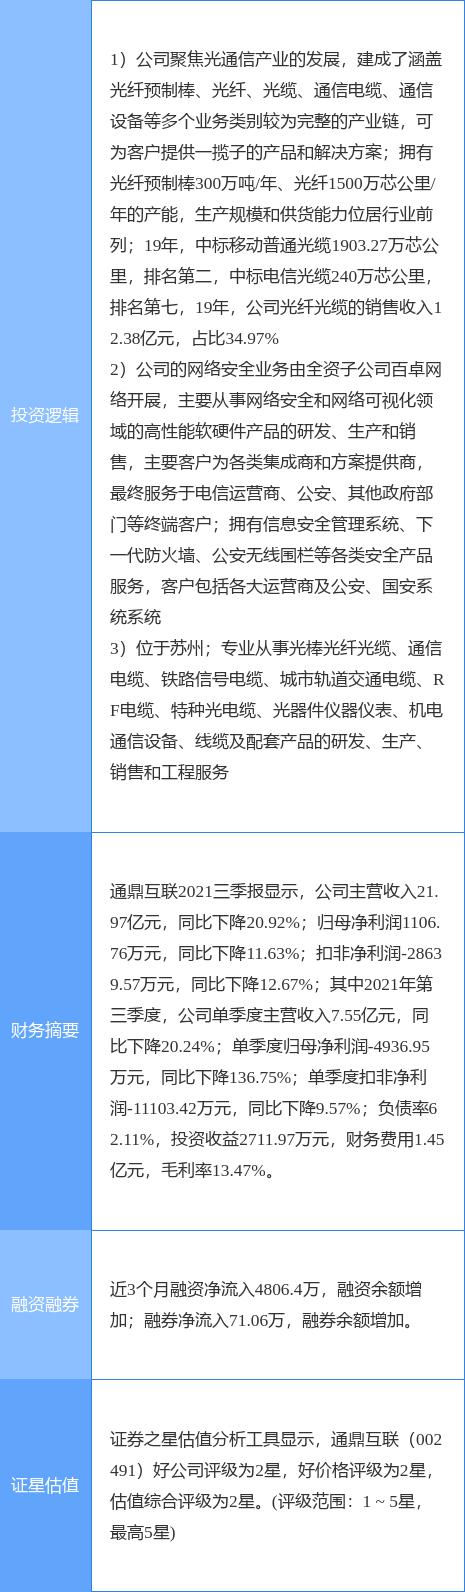 通鼎互联发布公告 拟2.70亿元出售全资子公司瑞翼信息